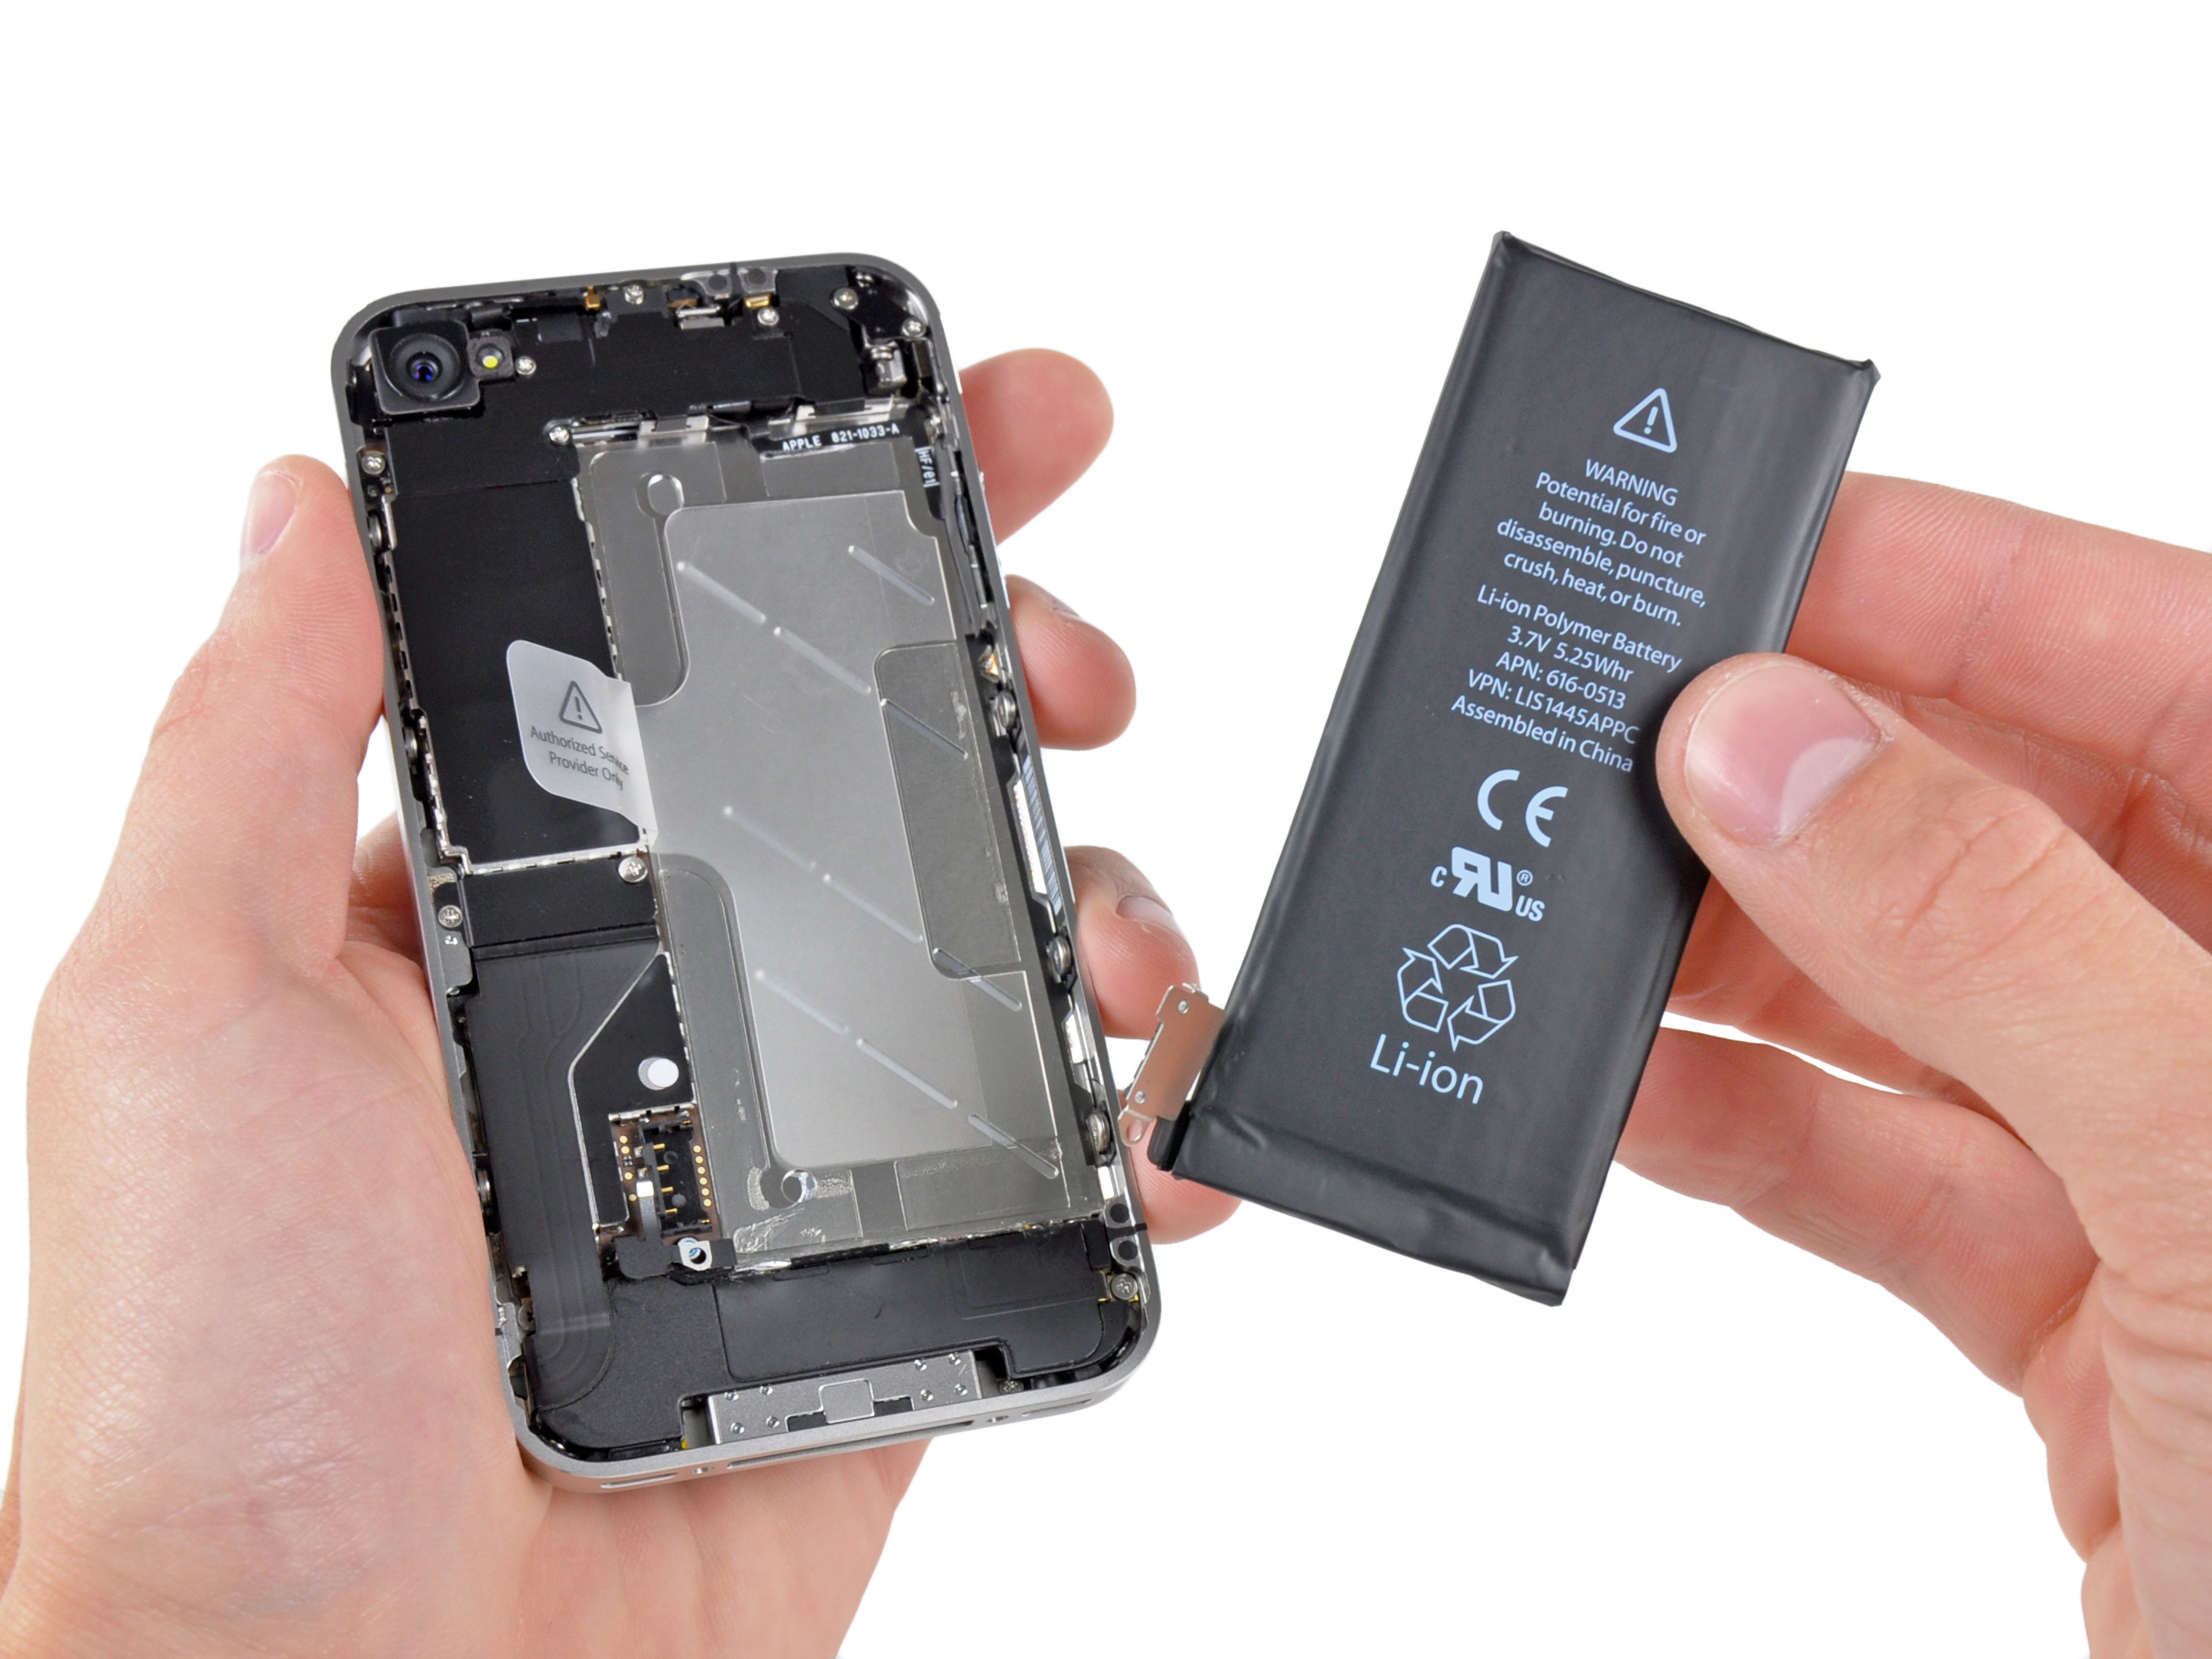 nguon pin ip 4s - iPhone 4S 16GB quốc tế màu trắng